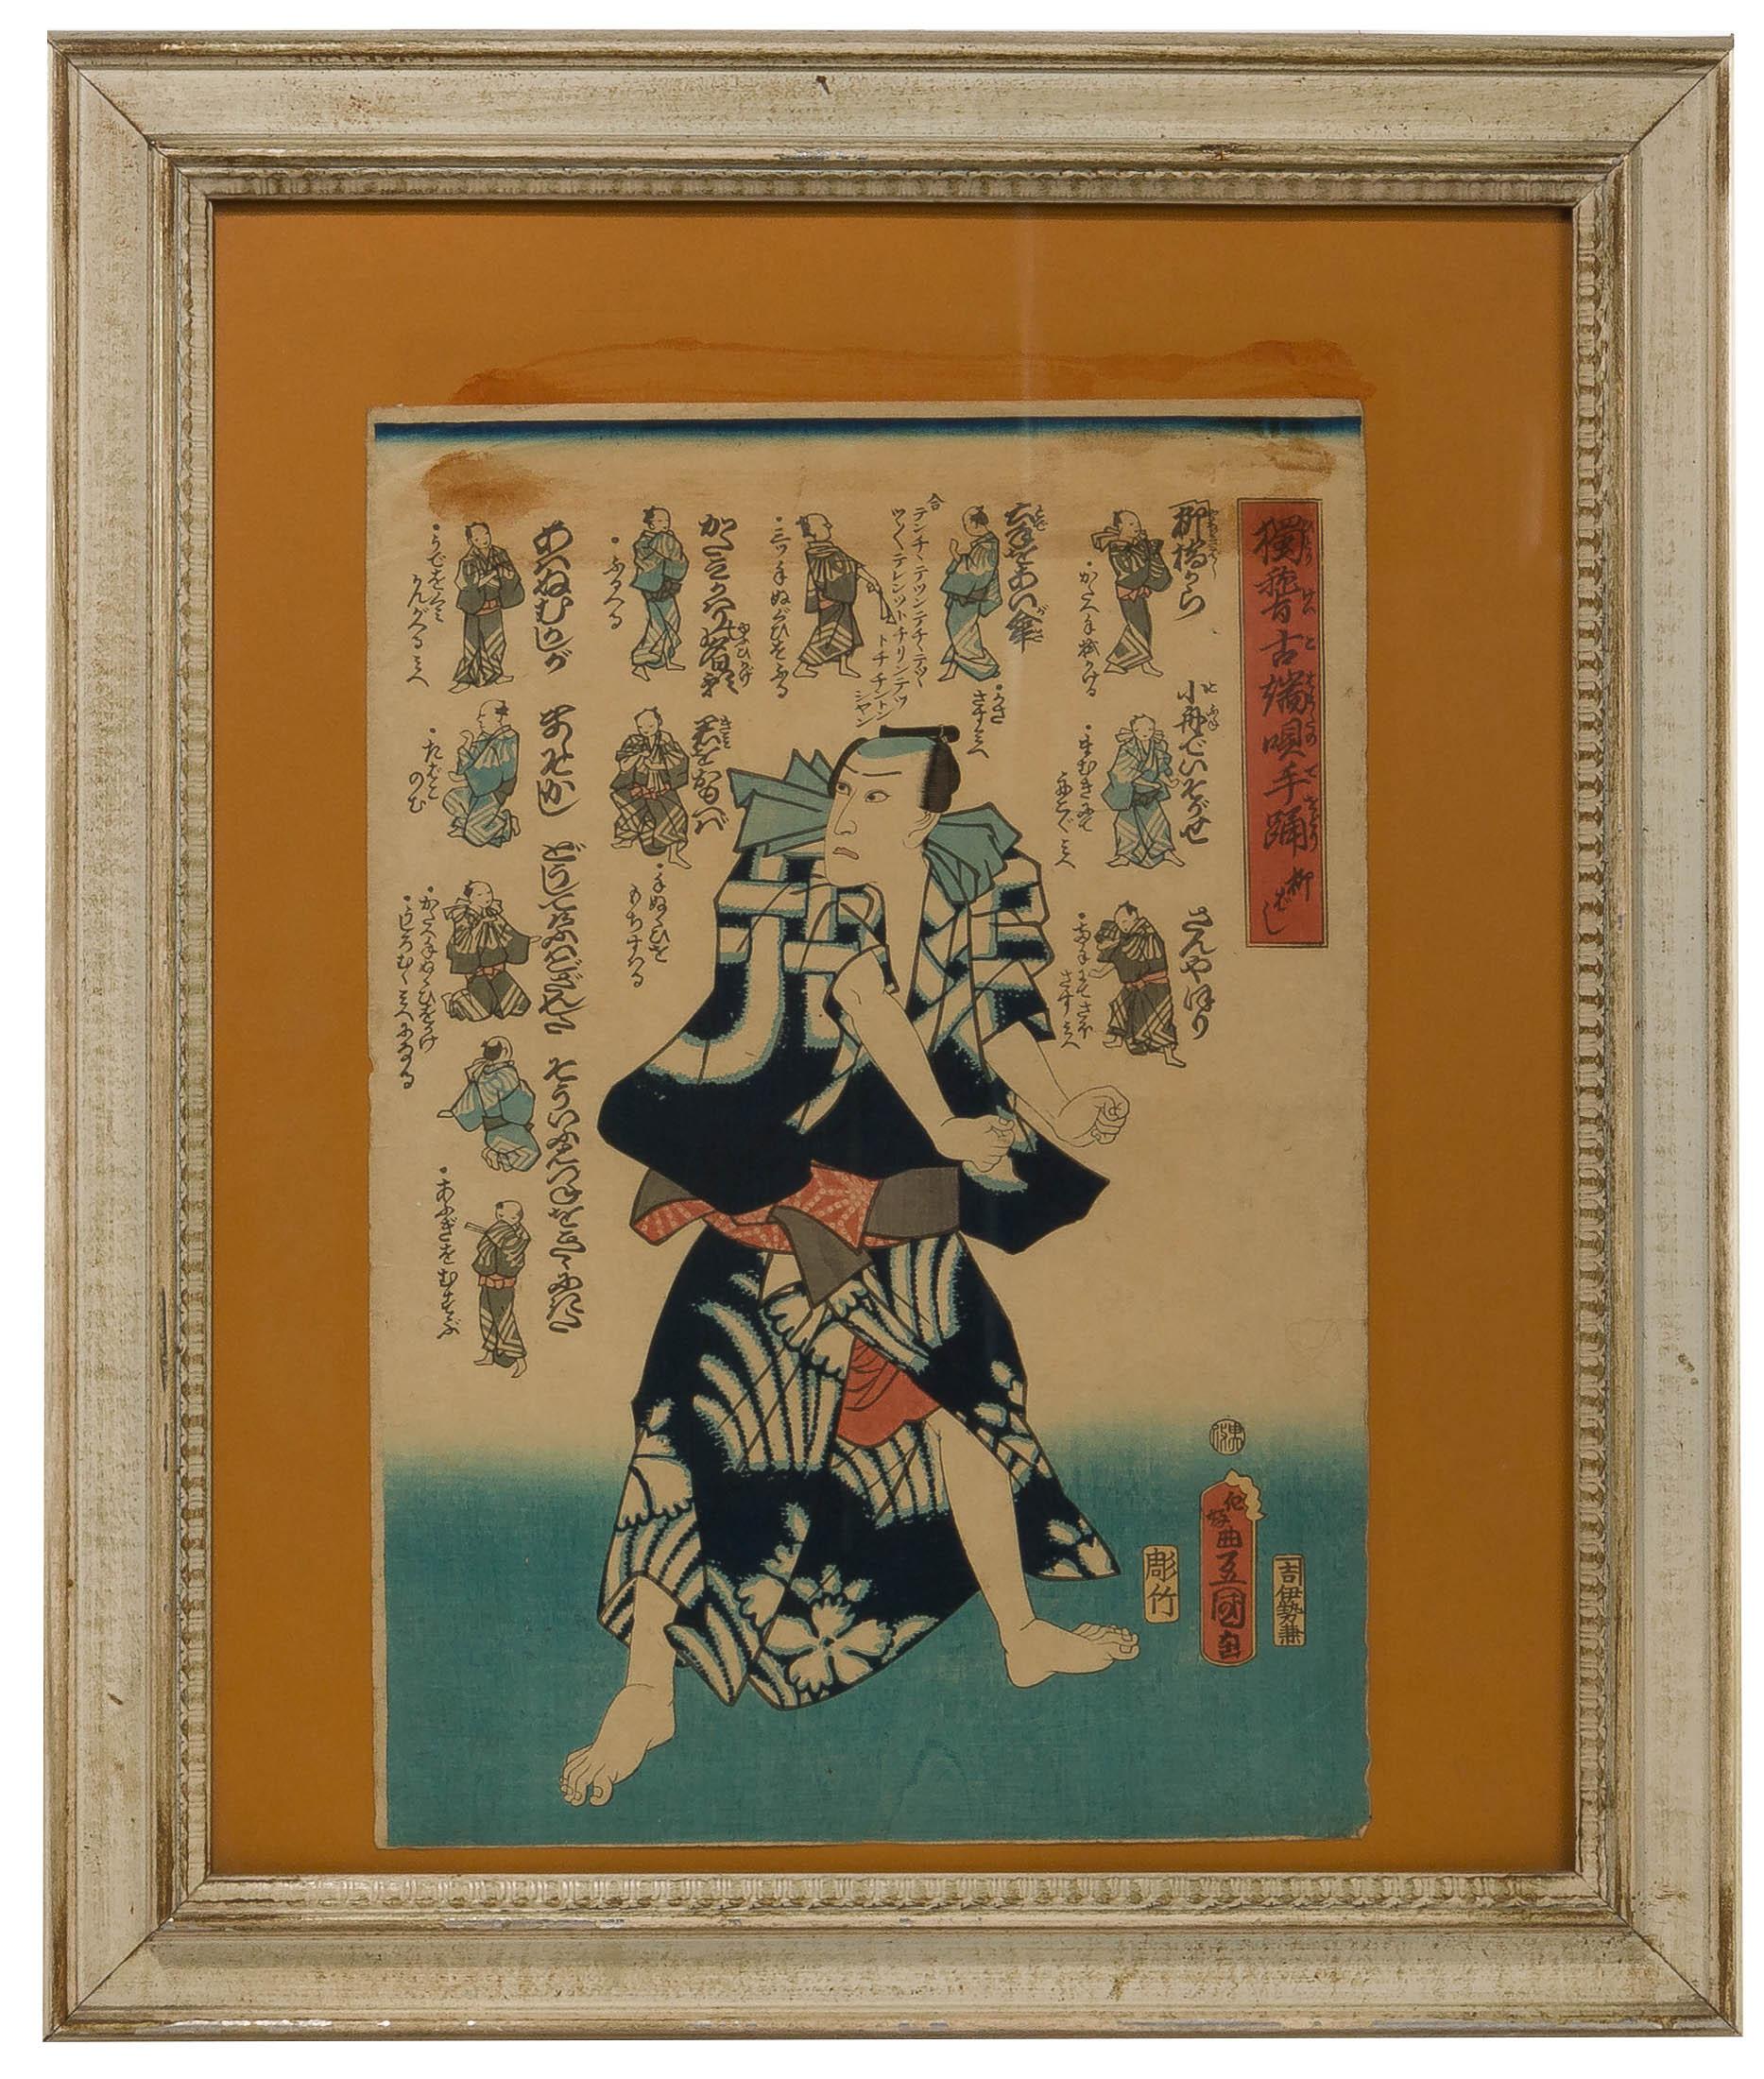 Utagawa Kunisada (Japanese, 1786-1864) Kabuki-Themed Ukiyo-E Prints